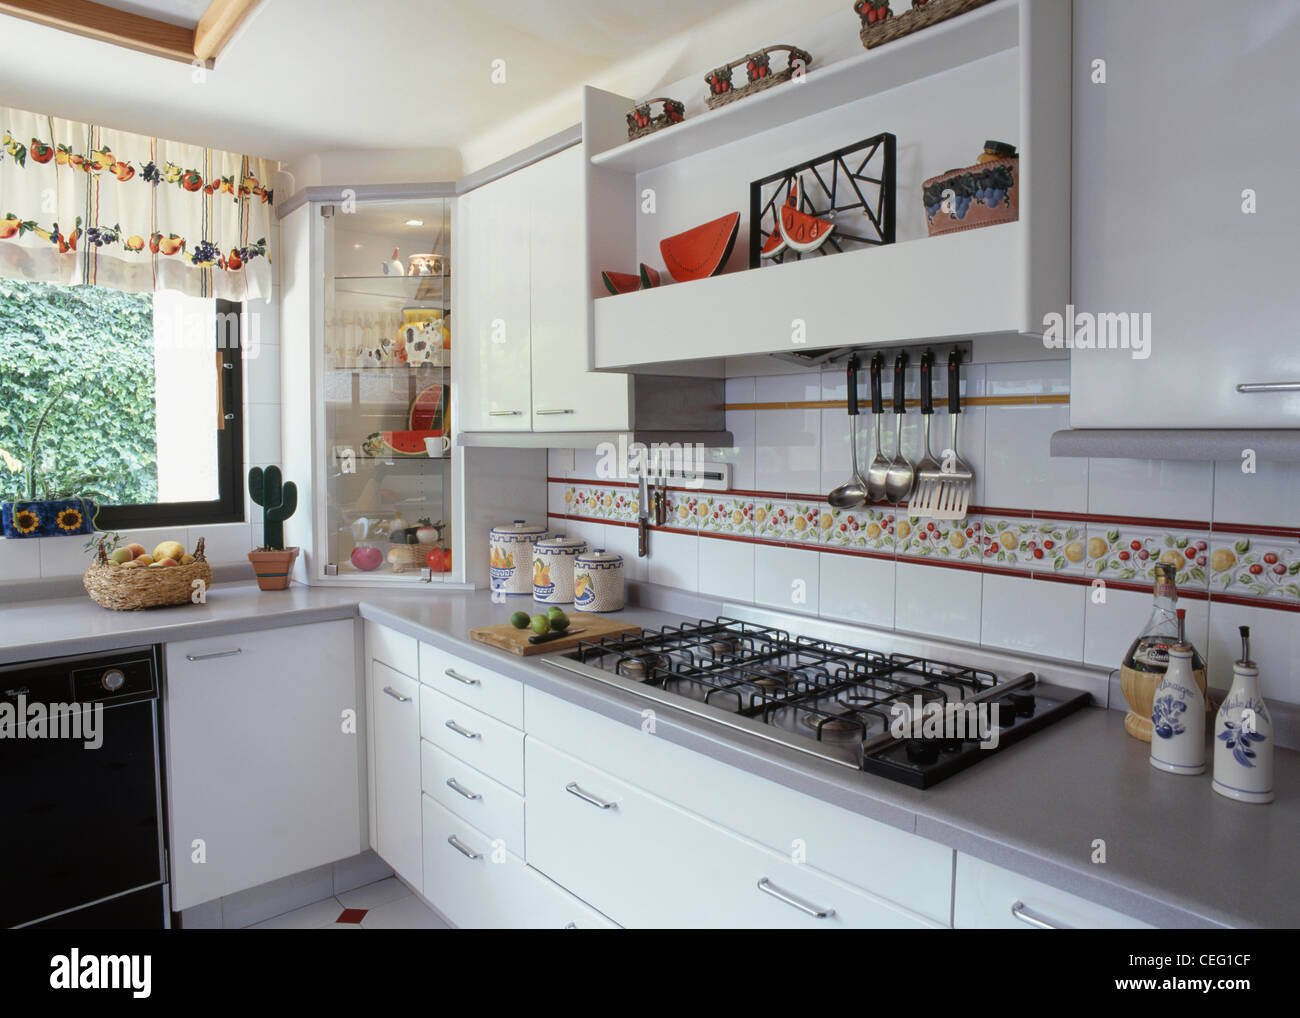 Offene Regale und weiß gefliest Splash-Rücken mit erhöhten Fliese Grenze  über dem Kochfeld in modernen weißen Küche Arbeitsplatte eingebaut  Stockfotografie - Alamy